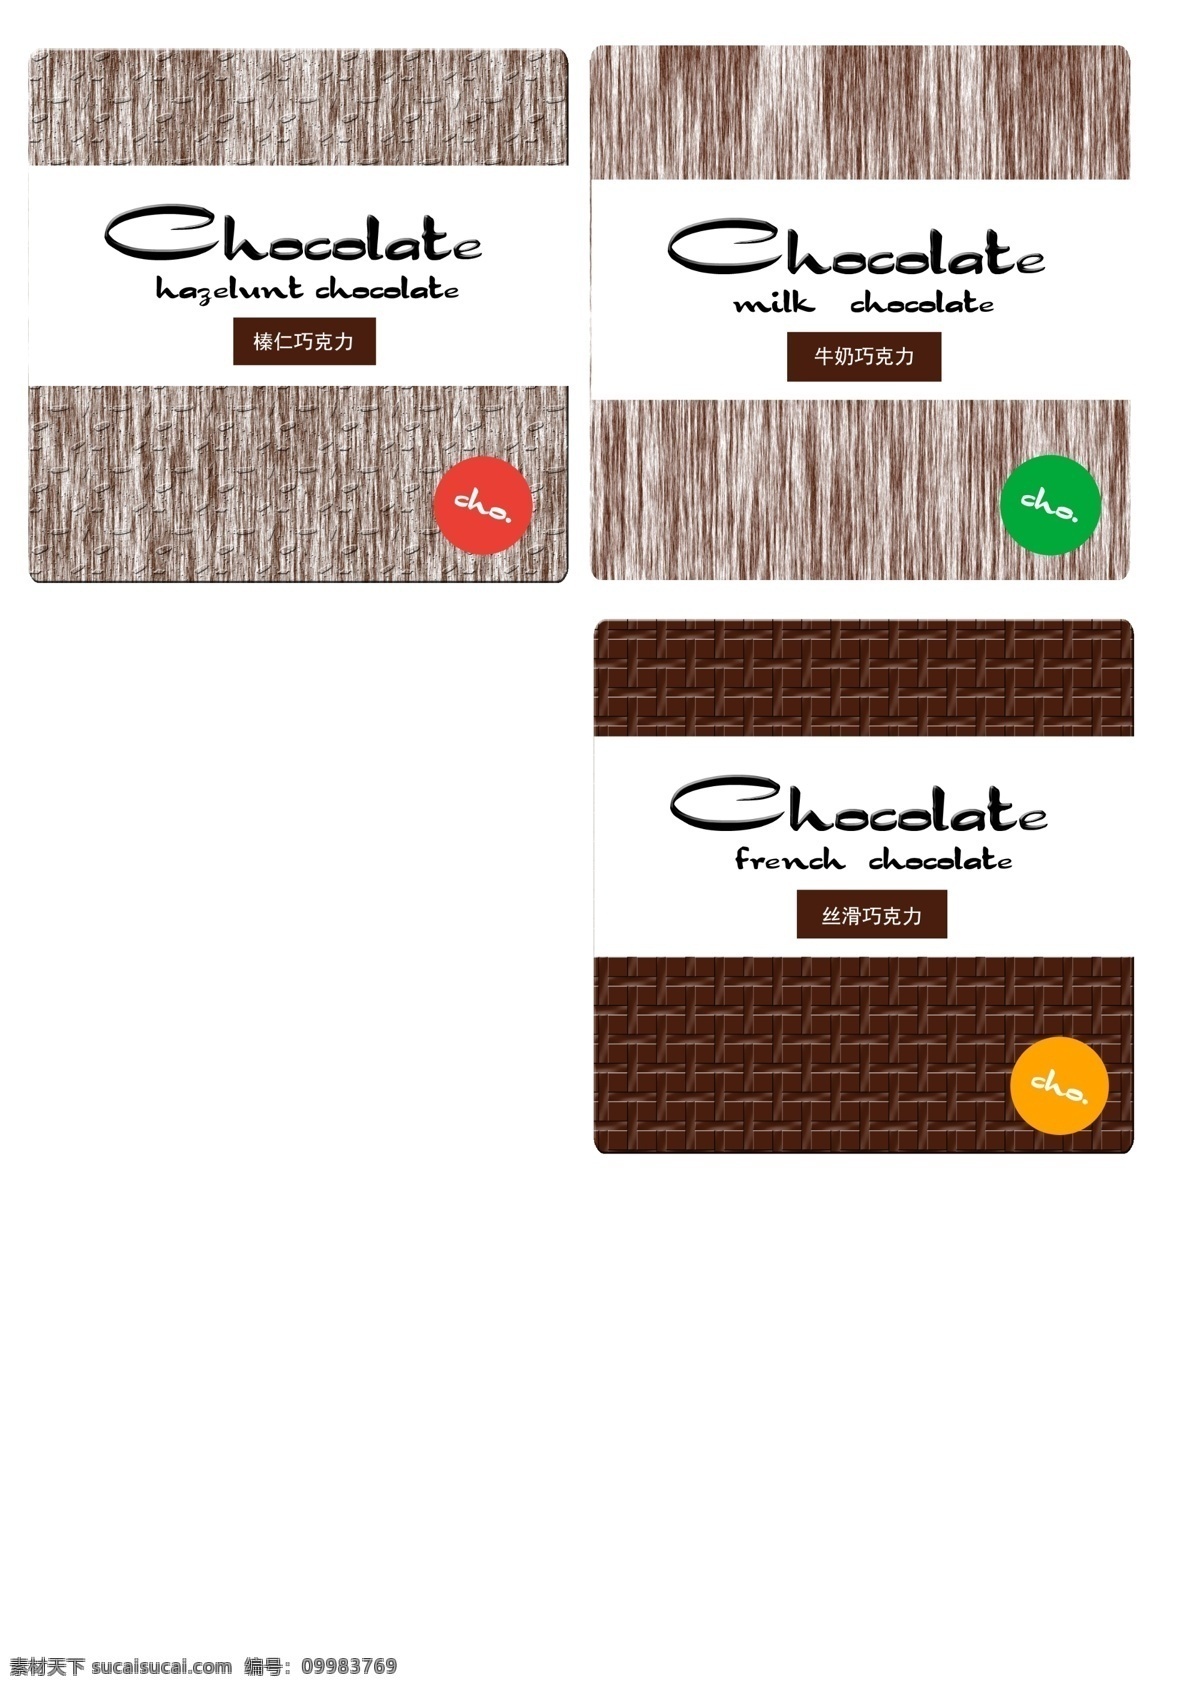 chocolate 巧克力 包装设计 包装 广告 城市建筑 白色